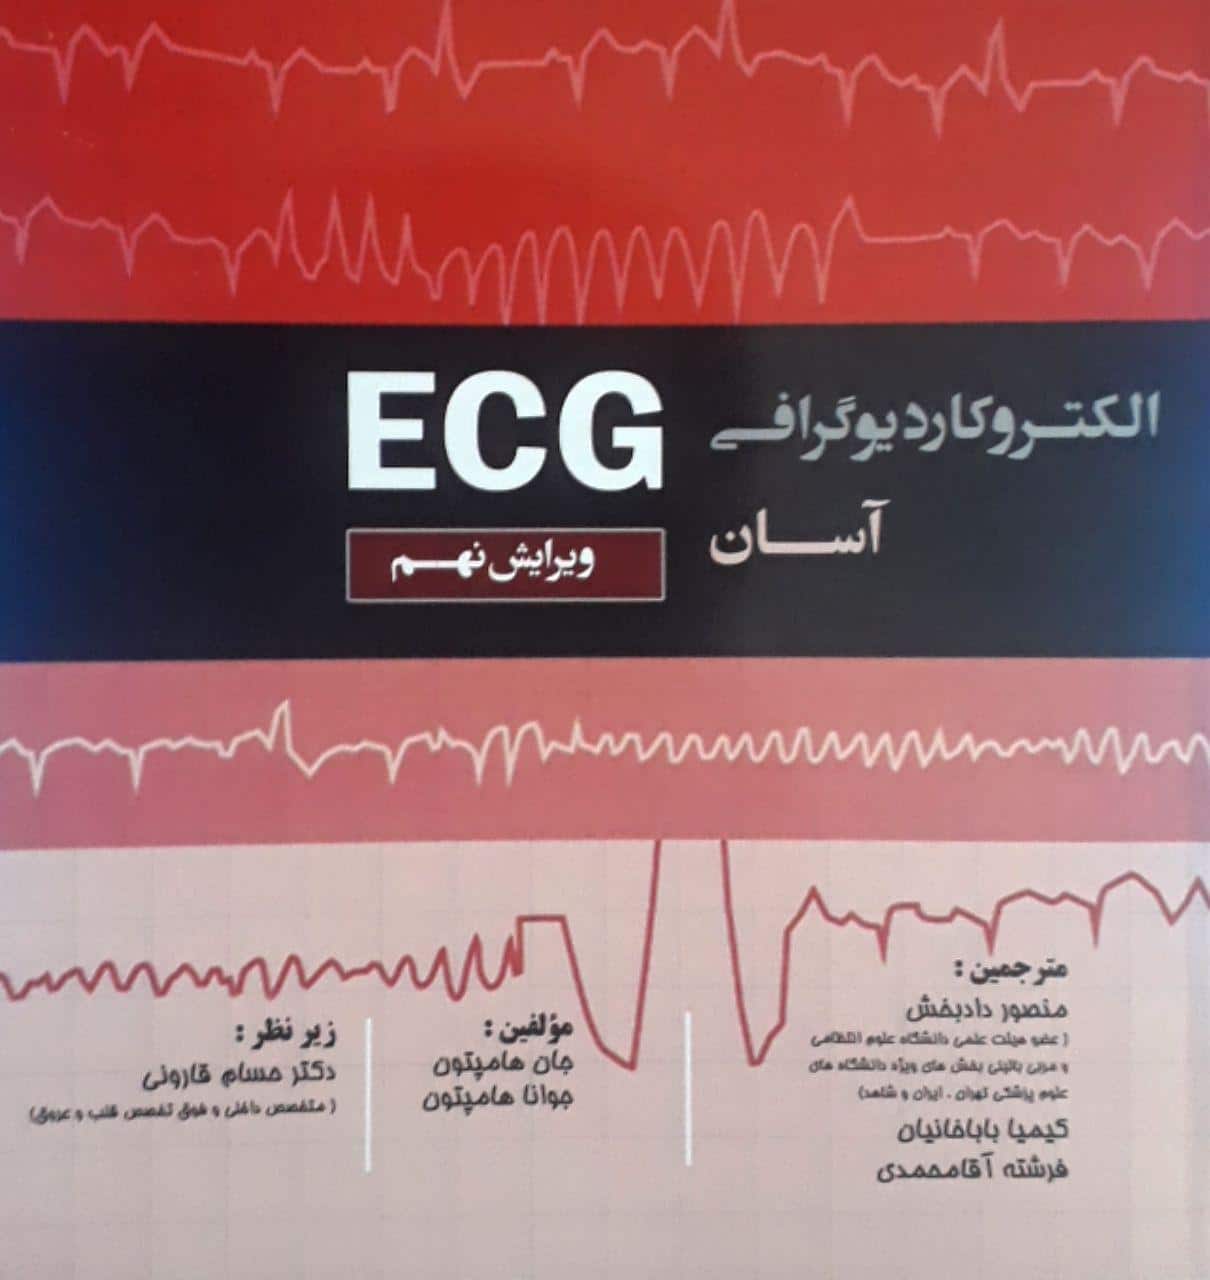 الکتروکاردیوگرافی آسان - ECG - هامپتون